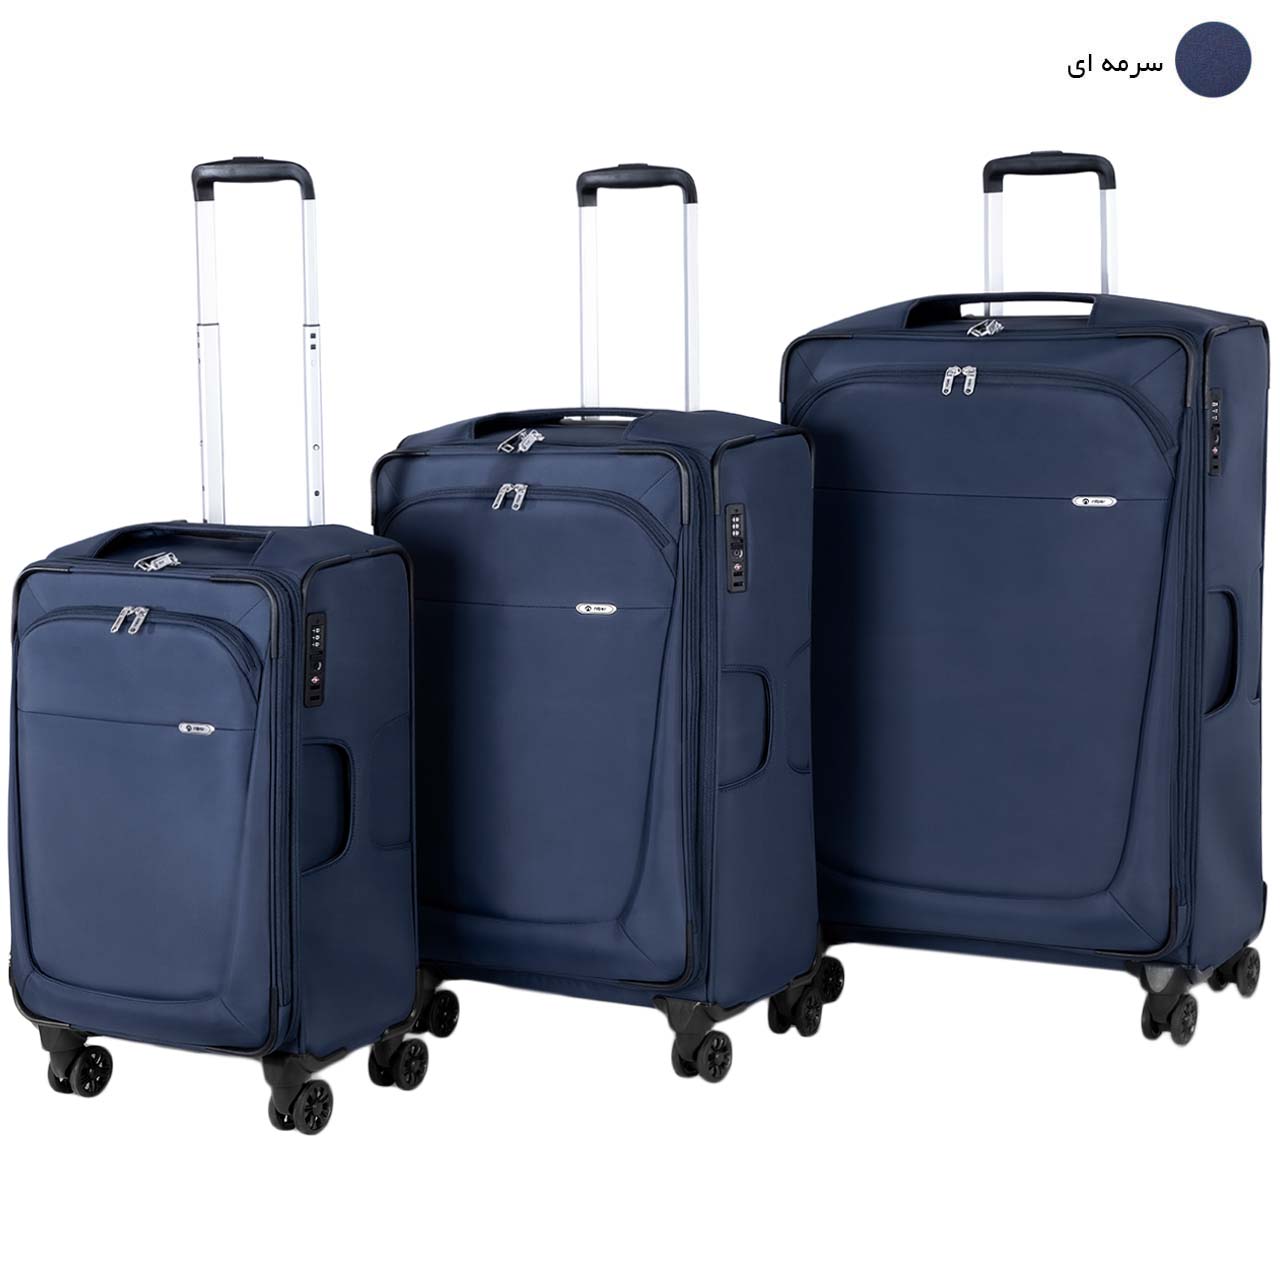 مجموعه سه عددی چمدان نیلپر مدل آوان کد 700678 - 111 -  - 17